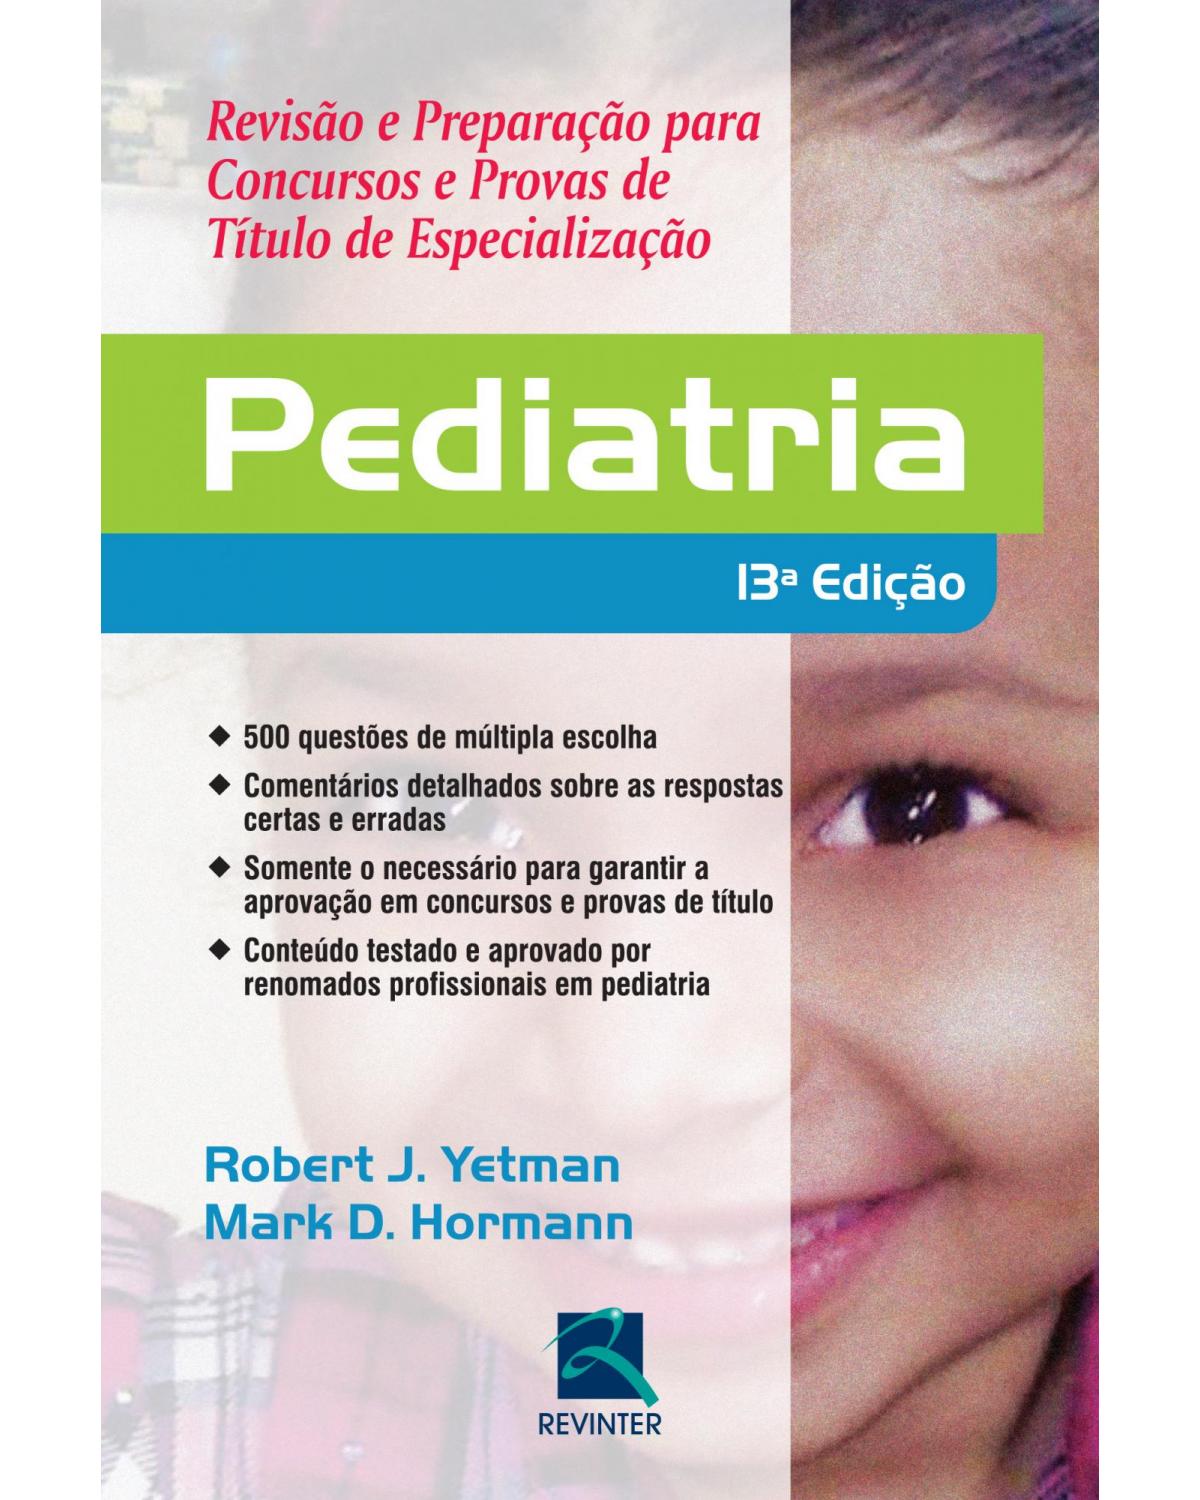 Pediatria - revisão e preparação para concursos e provas de título de especialização - 13ª Edição | 2015